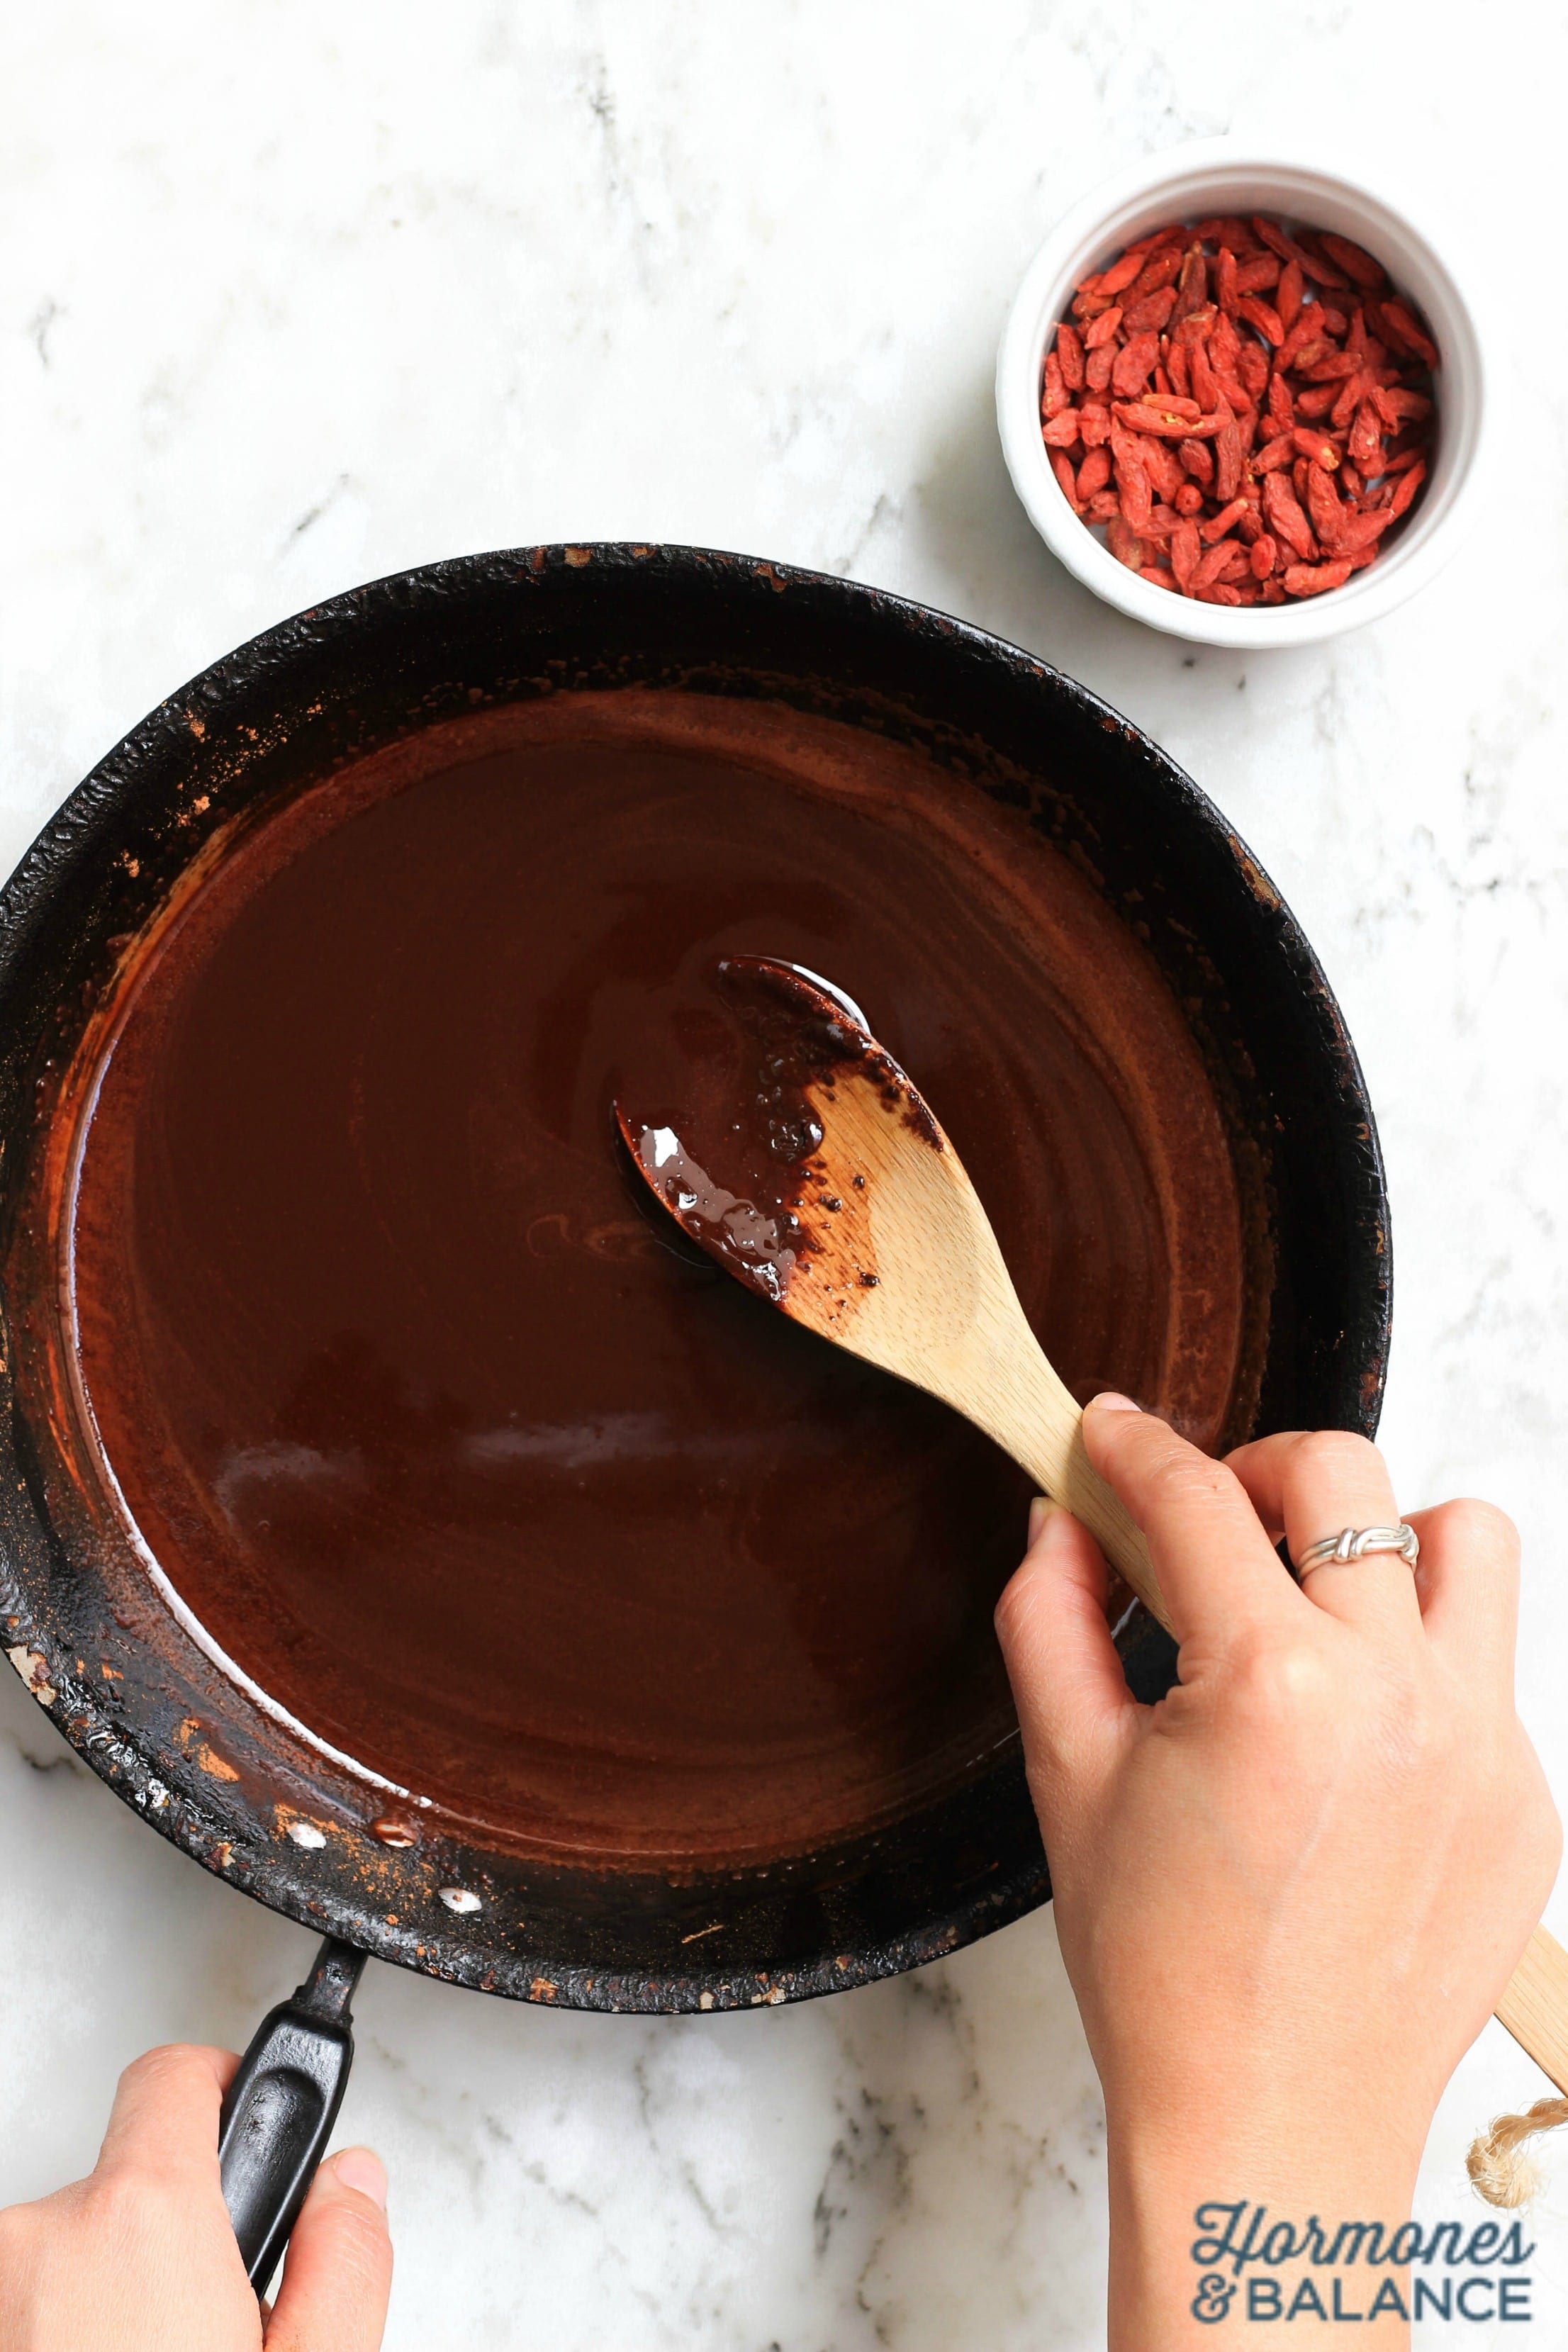 Homemade Chocolate with Goji Berries and Chili Powder Dessert Recipe